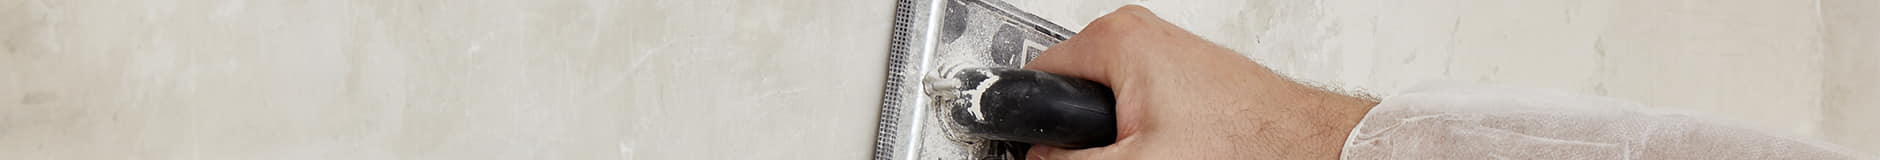 Primena gotovog mikrocementa na neprohodnoj površini pomoću lopatice